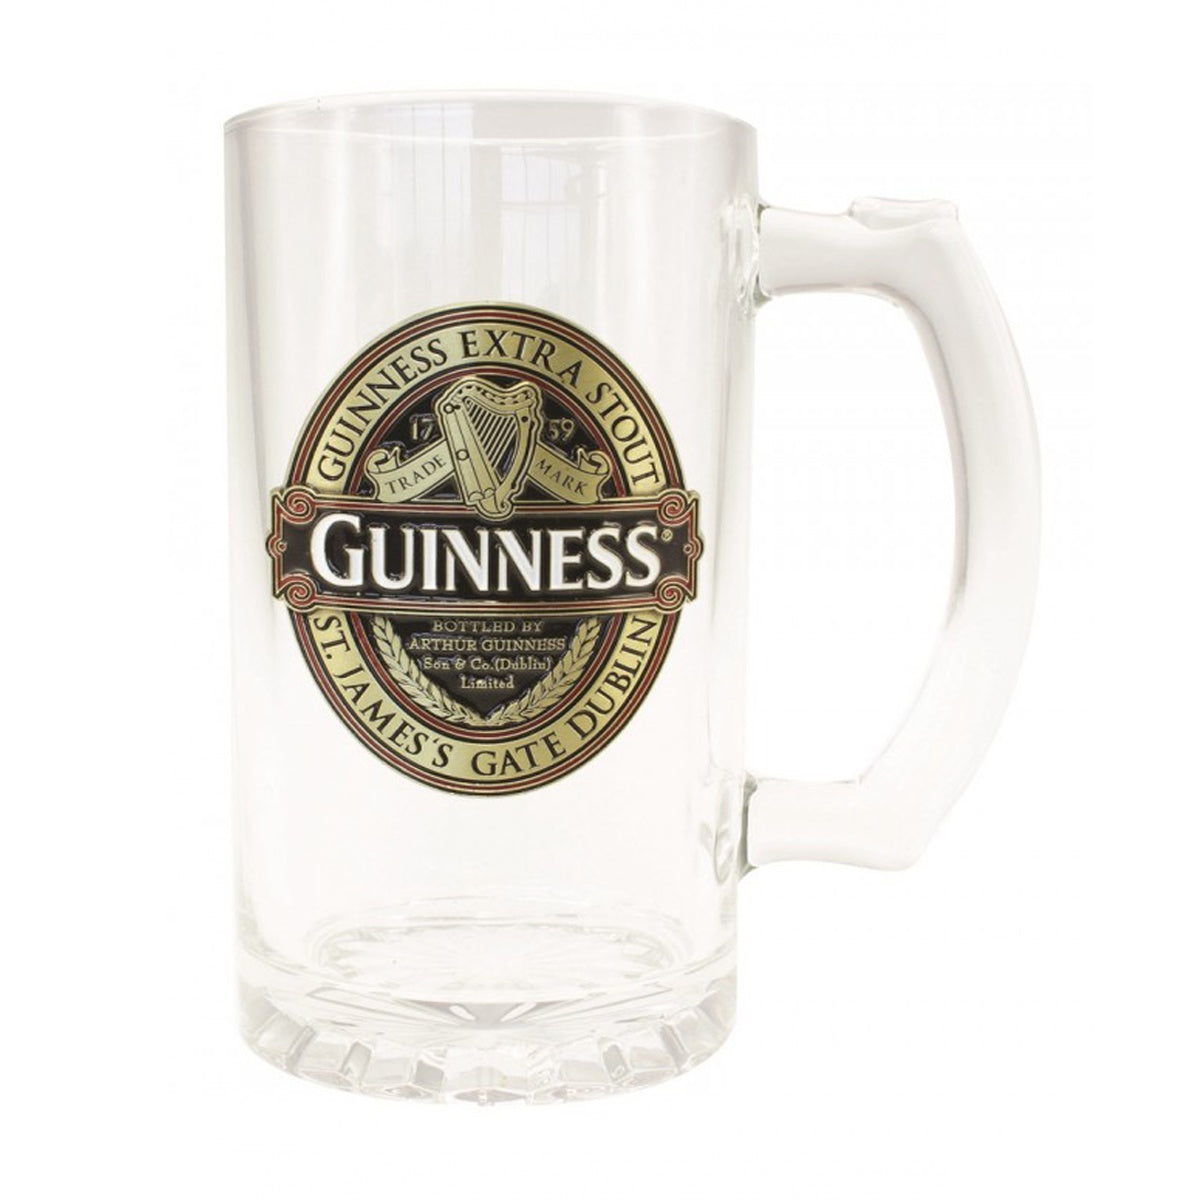 http://worldchic.com/cdn/shop/products/Guinness-Ireland-Pint-glass-Optimized-1.jpg?v=1586635189&width=2048